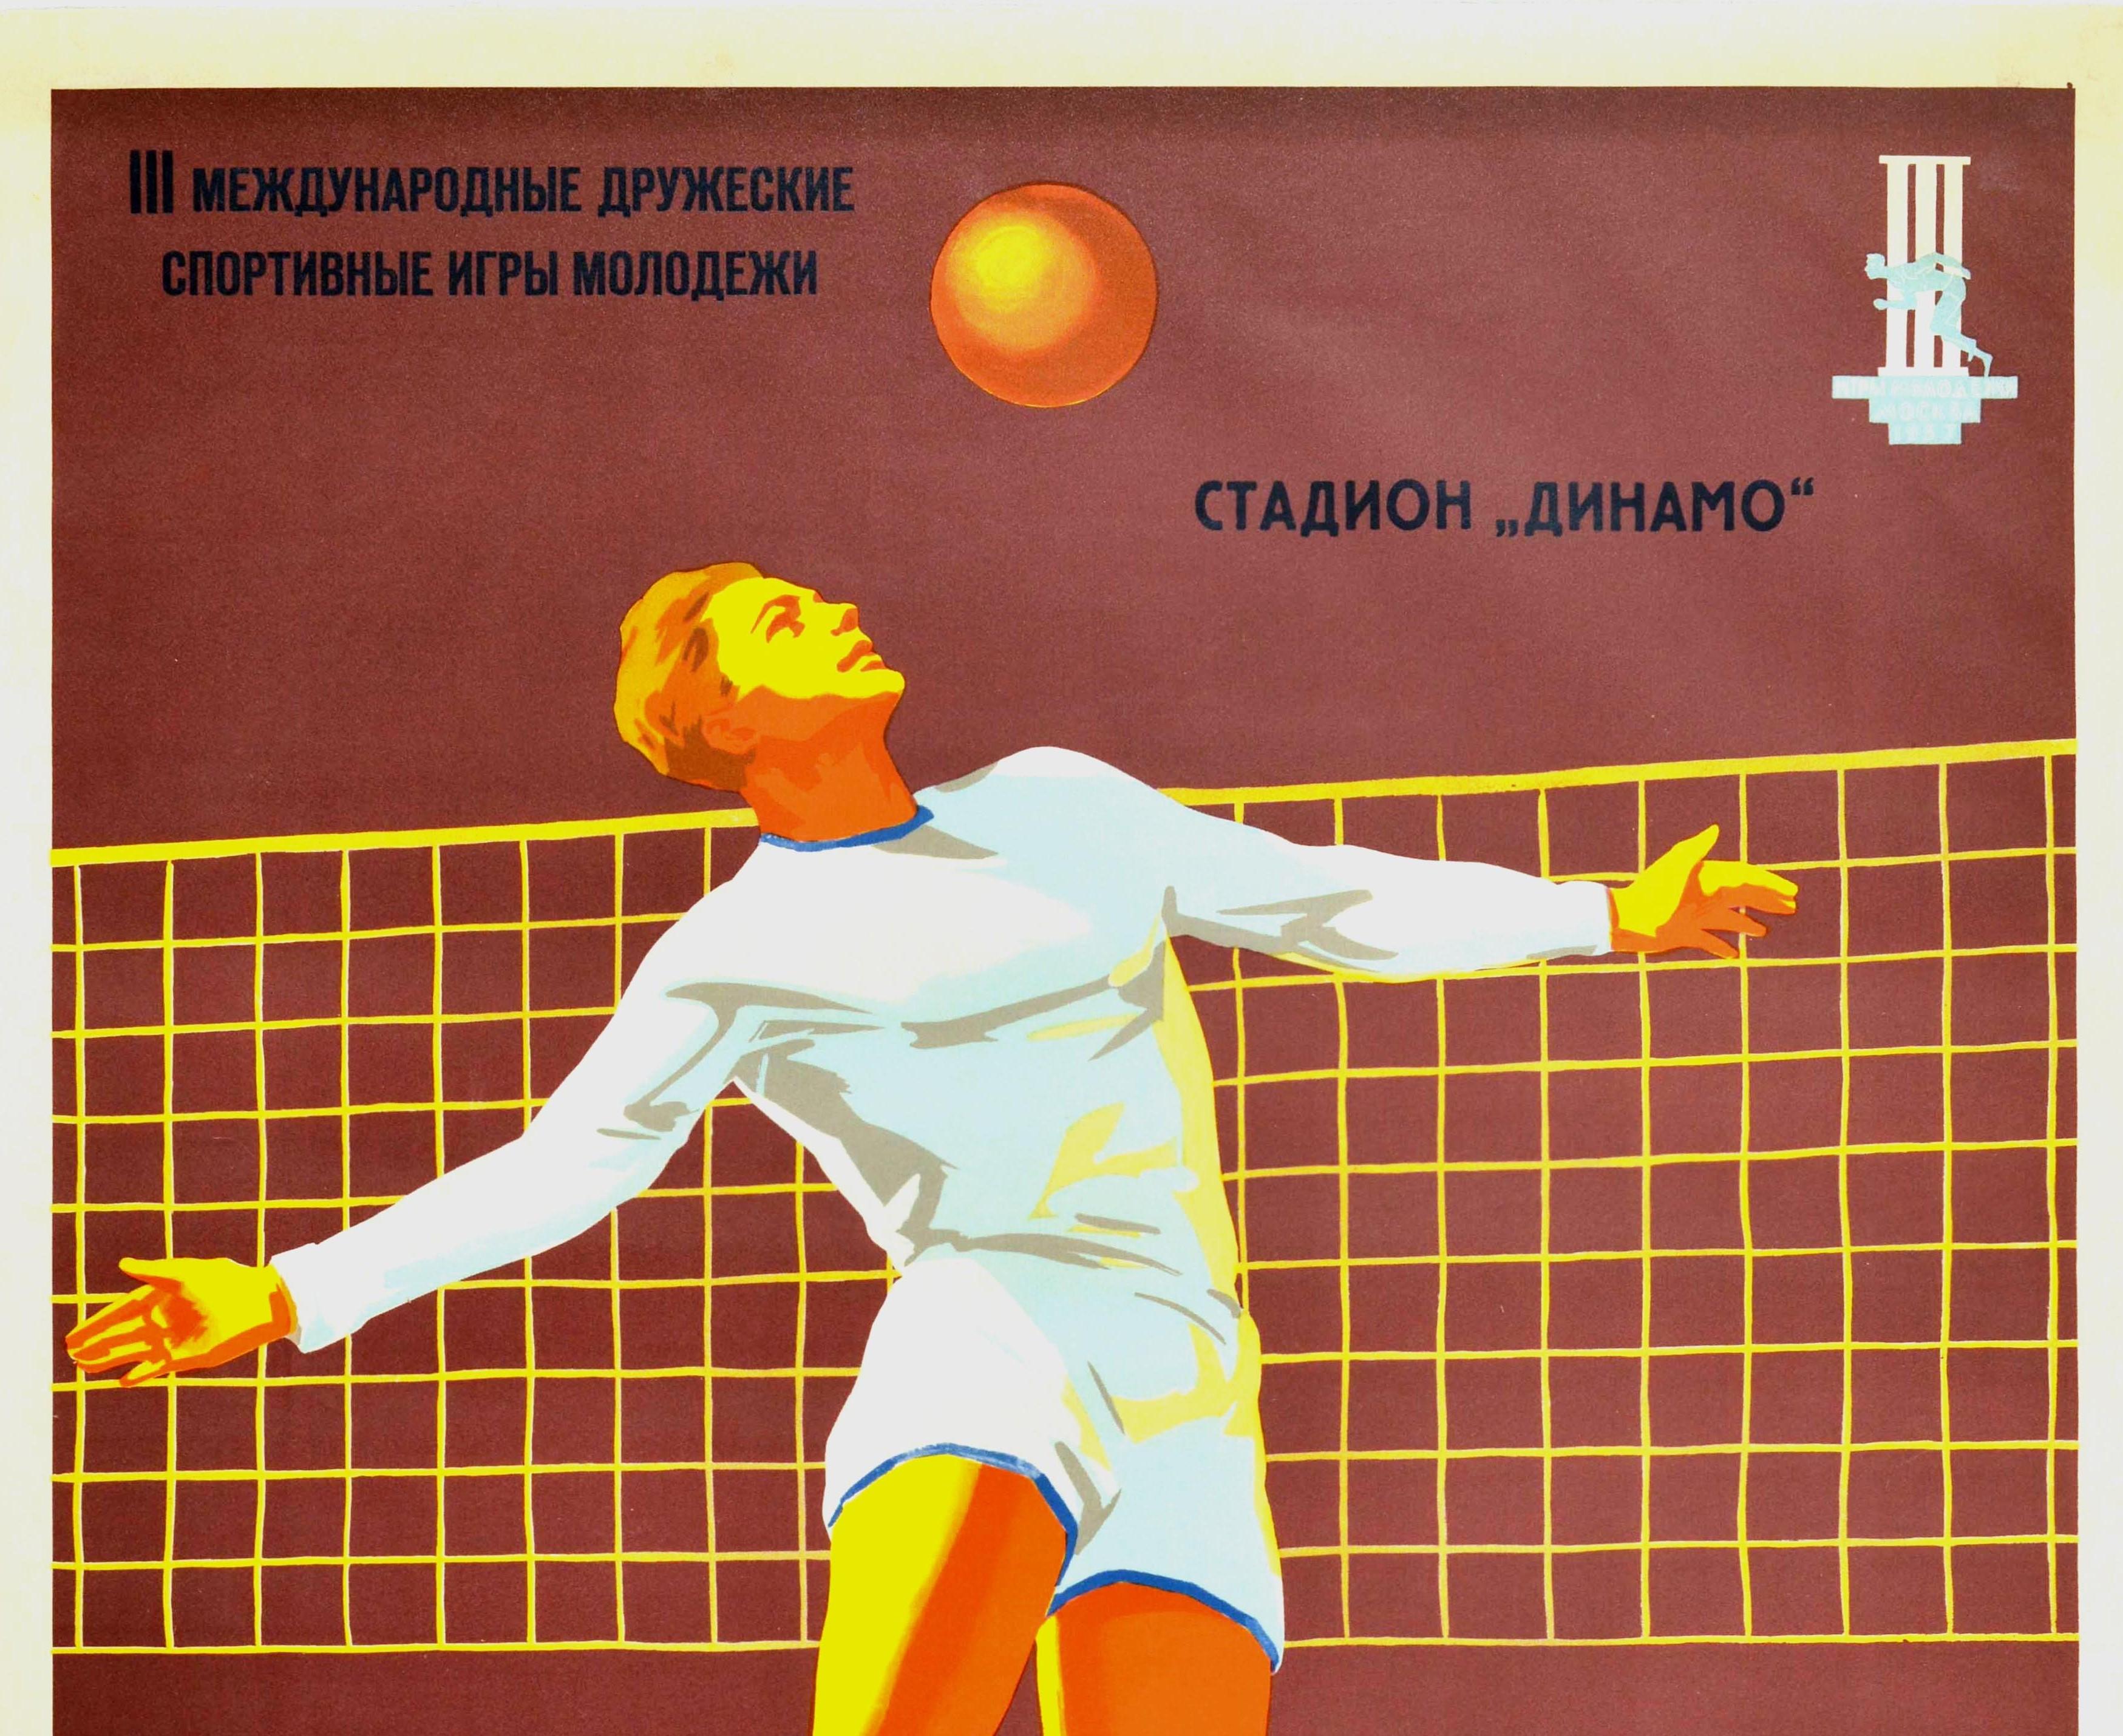 Original-Sportplakat für einen Volleyball-Wettbewerb bei den III. Internationalen Moskauer Jugend-Freundschaftsspielen, die vom 30. Juli bis 9. August 1957 im Dynamo-Stadion stattfanden. Es zeigt einen Volleyballspieler in Weiß, der hochspringt, um